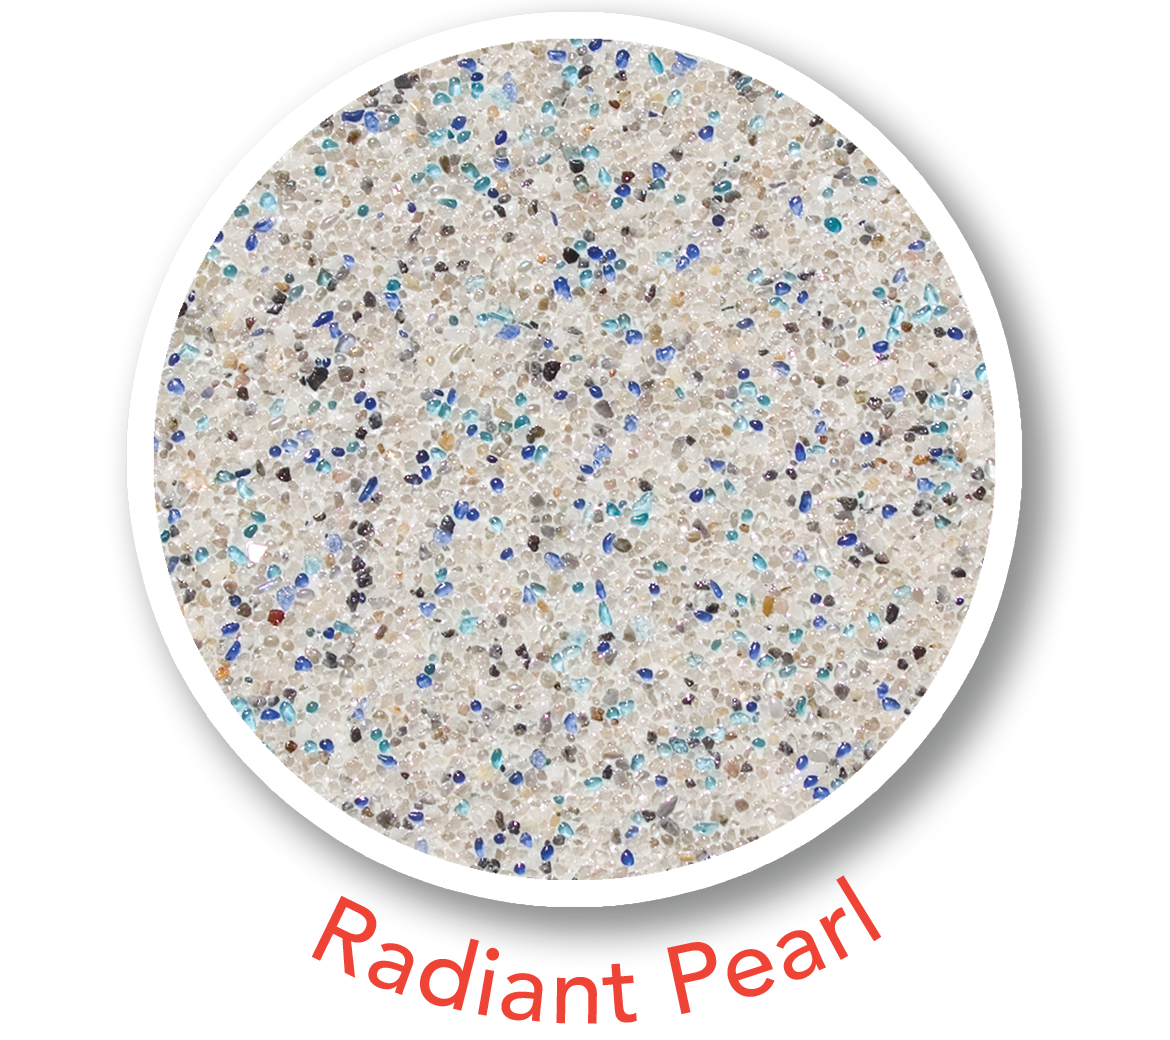 Radiant Pearl